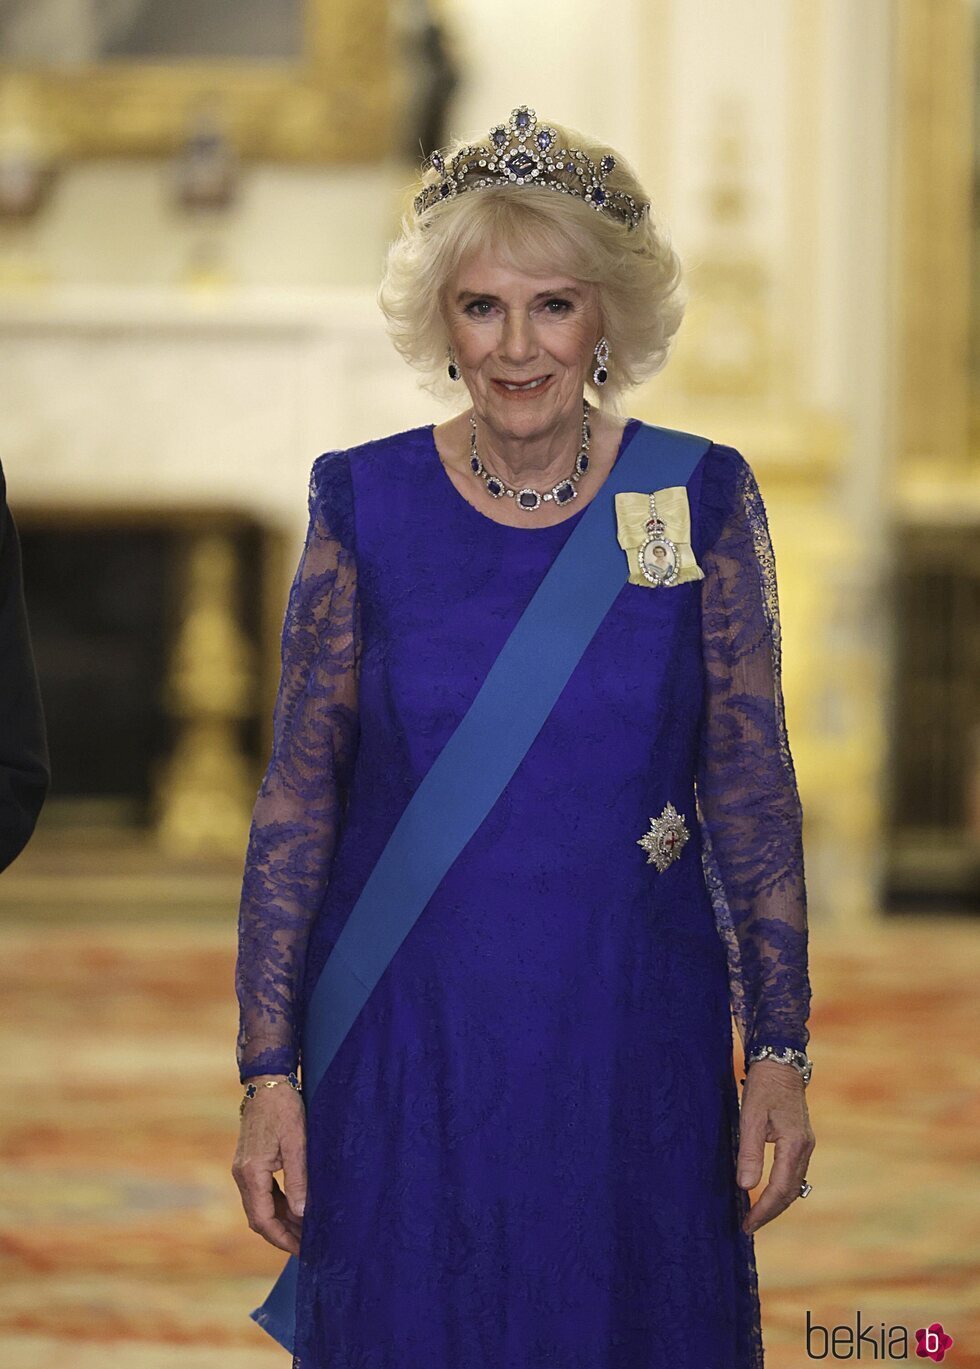 La Reina Camilla durante la cena de Estado ofrecida en honor del Presidente de Sudáfrica en Buckingham